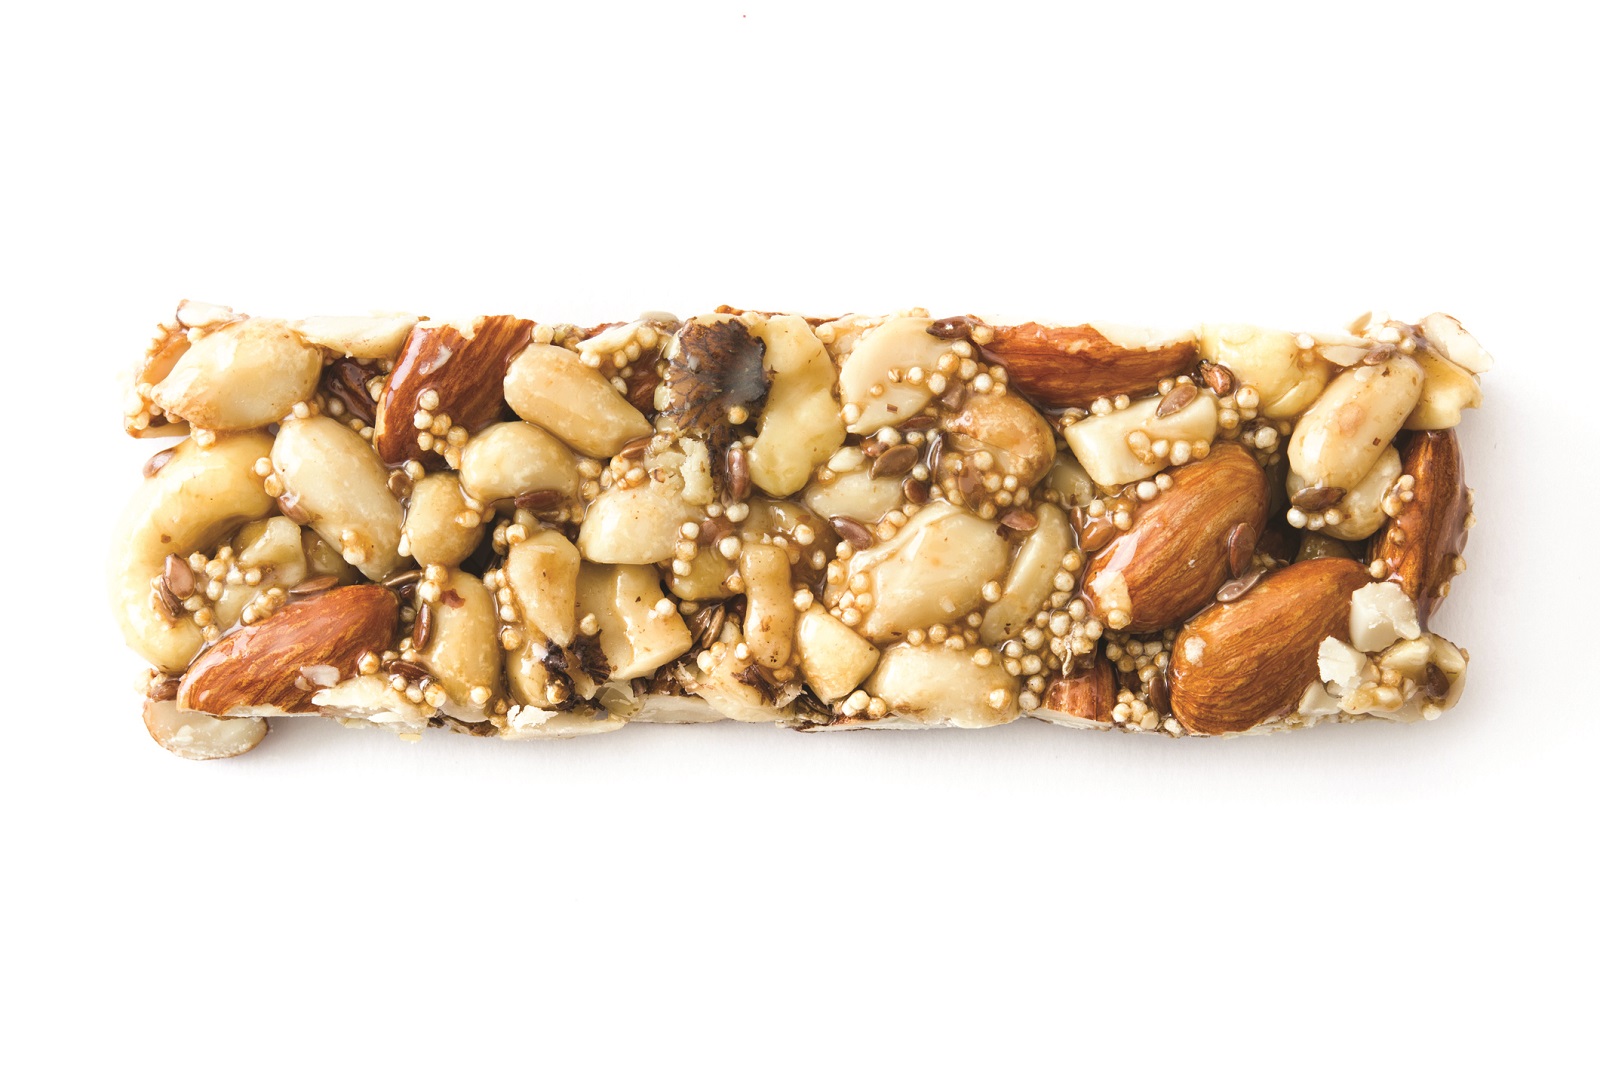 nut based snack bar